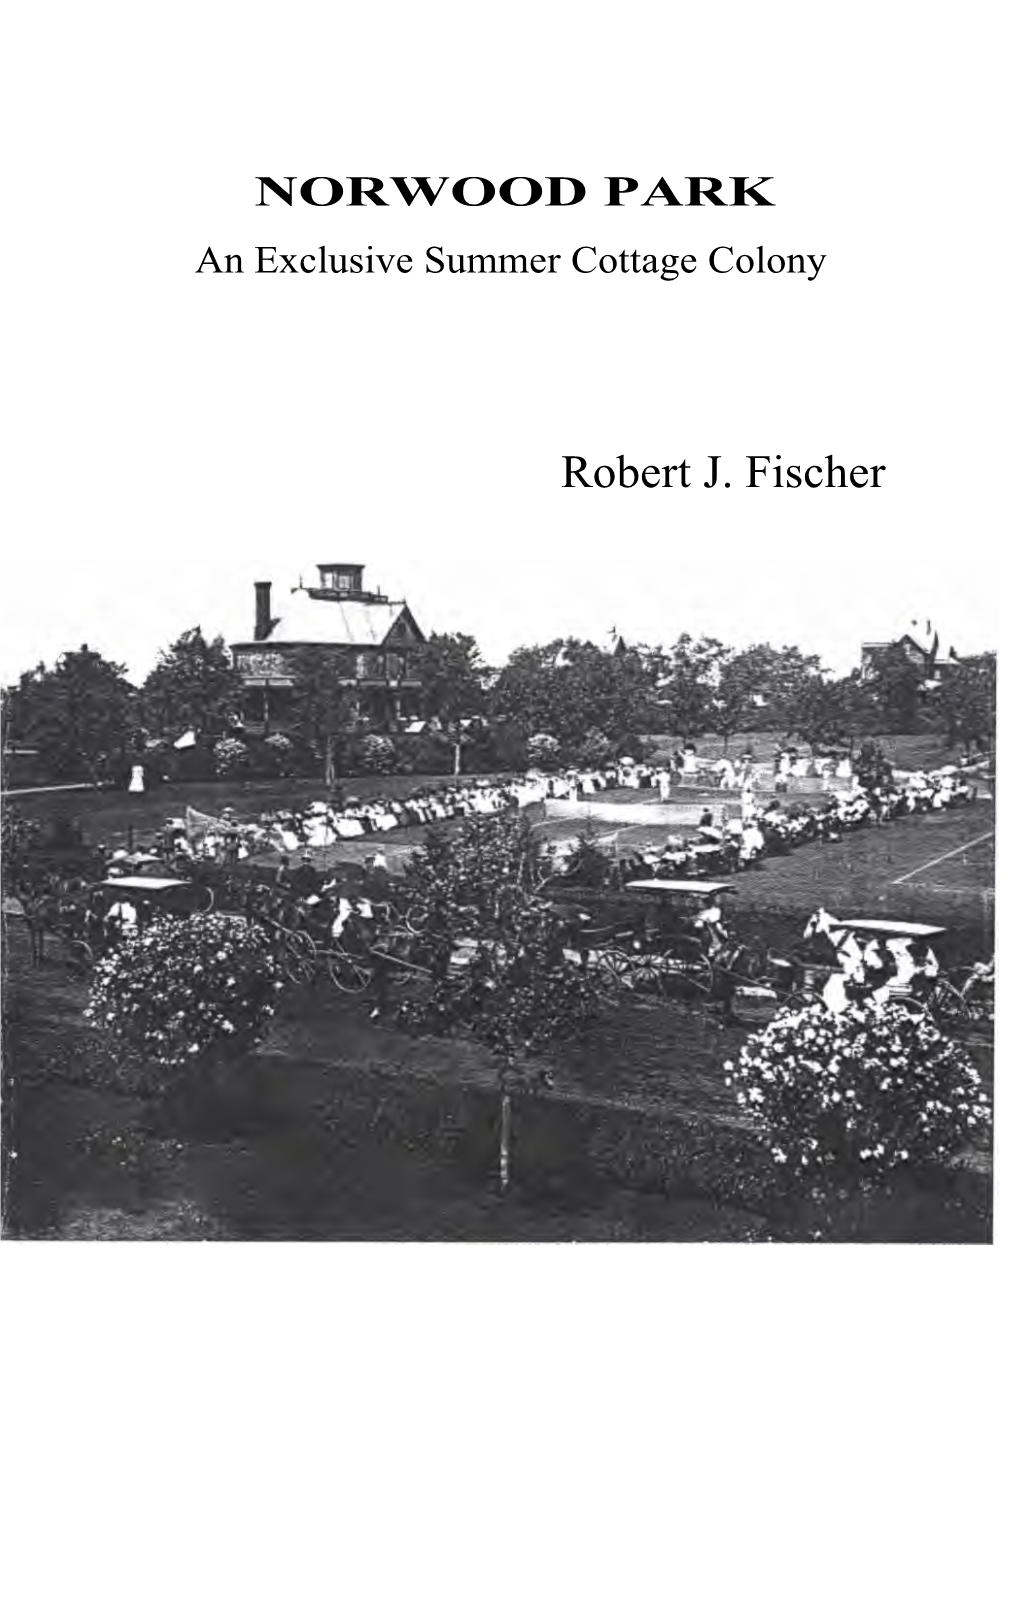 Robert J. Fischer